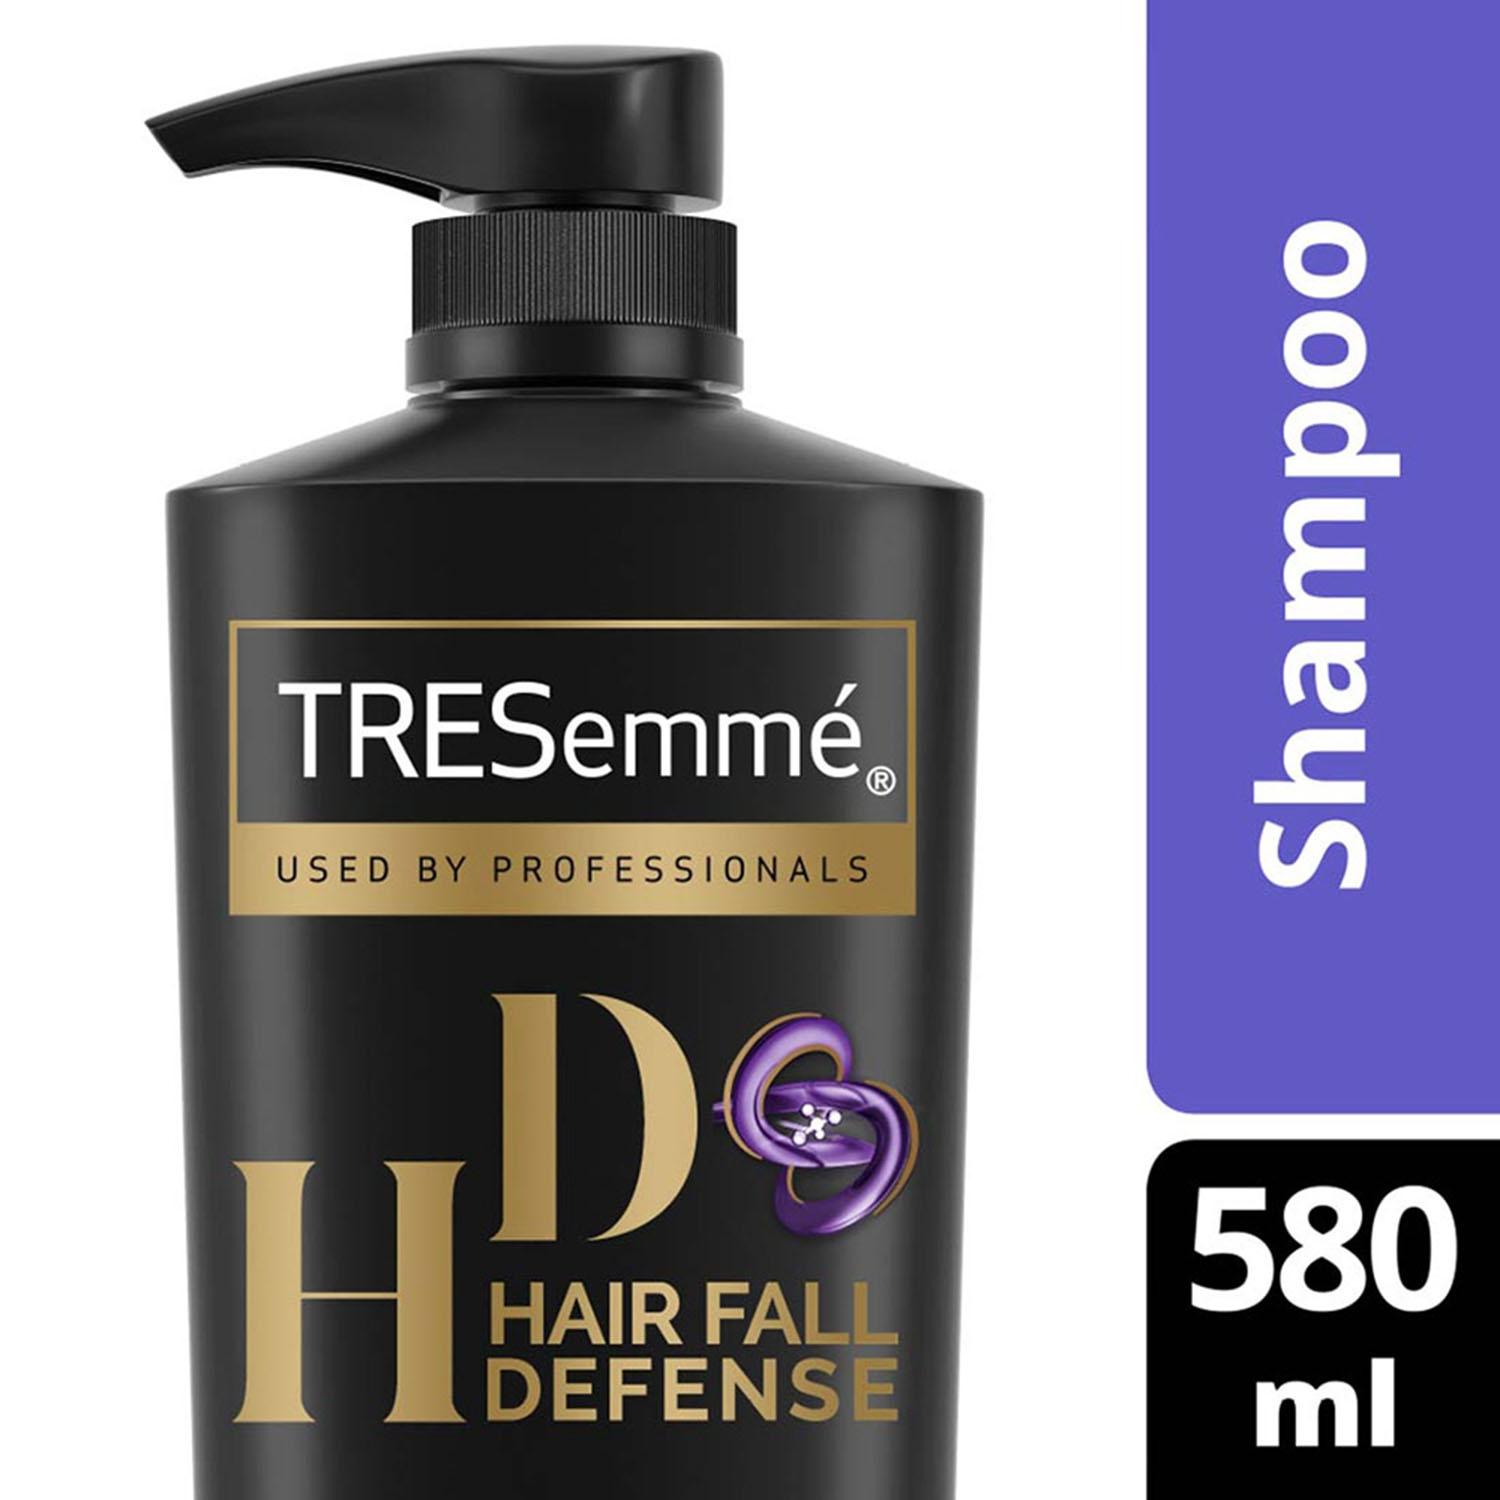 tresemme hair fall defense shampoo - (580ml)